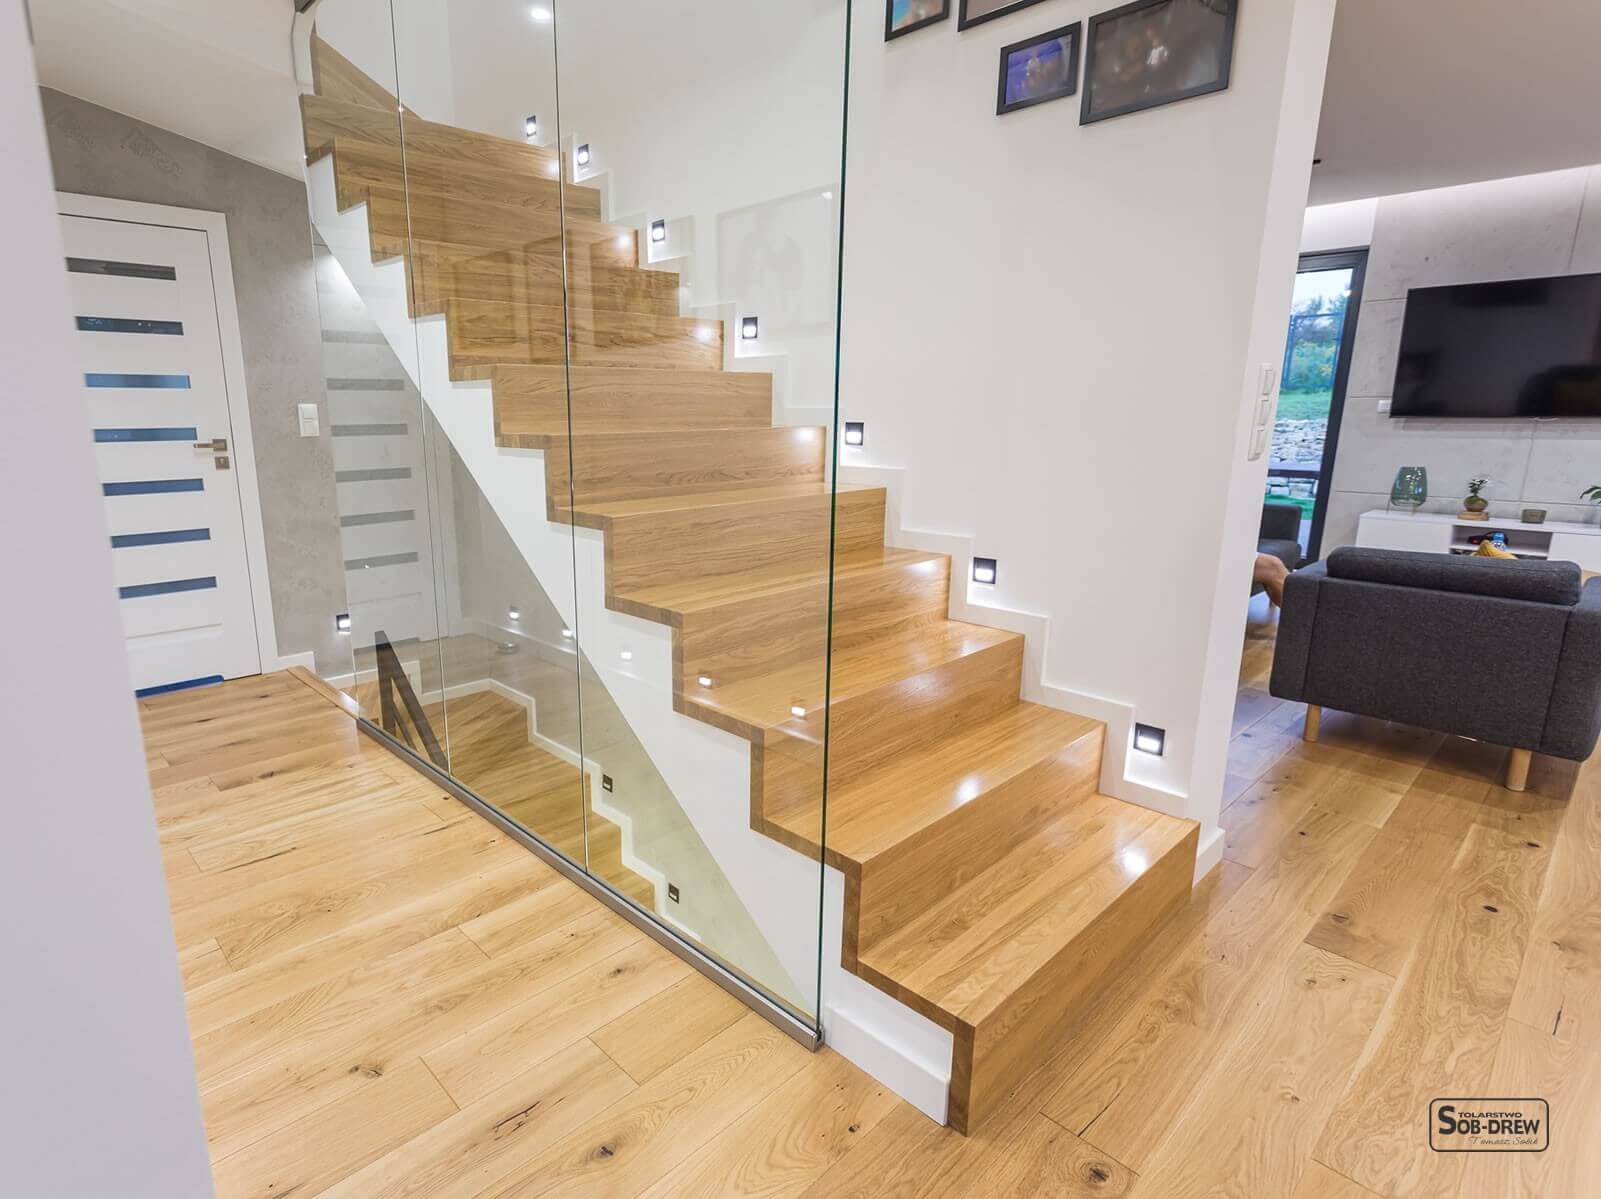 Czy można dobrze wkomponować szkło w schody? Oj, można - wspaniały przykład realizacji schodów nad s...